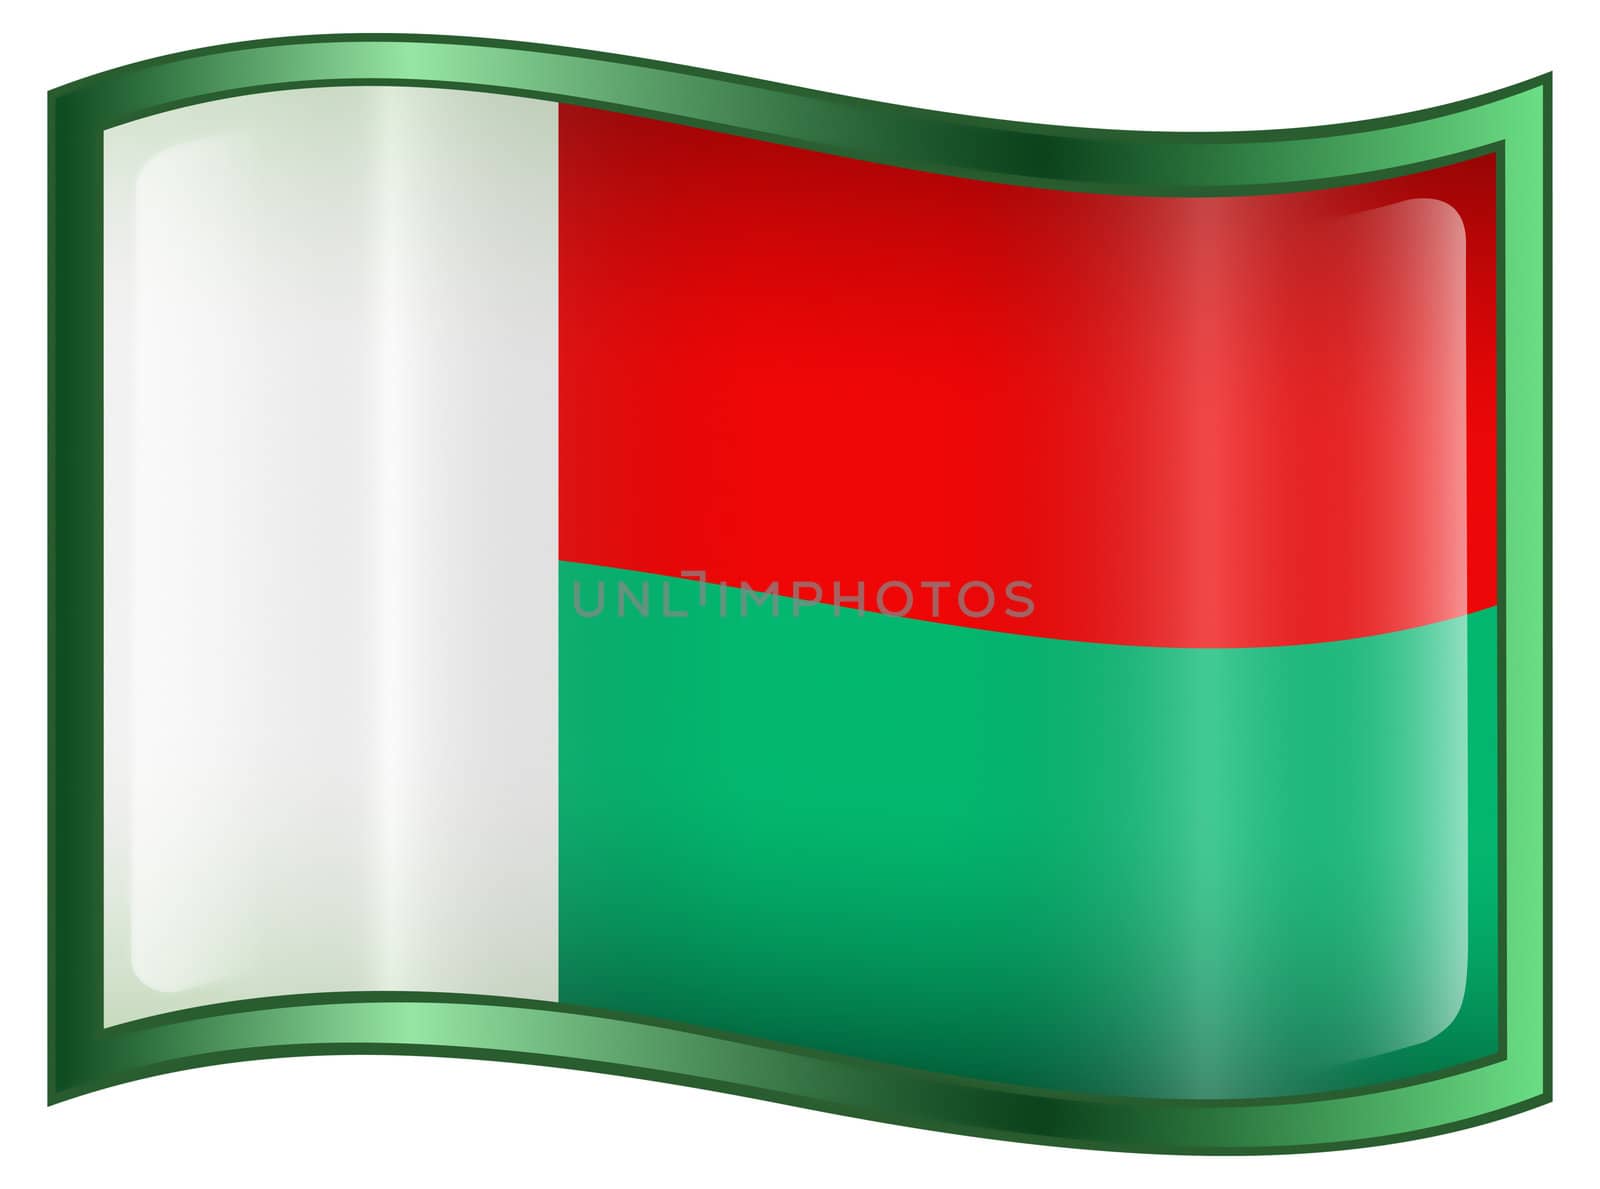 Madagascar Flag icon, isolated on white background.